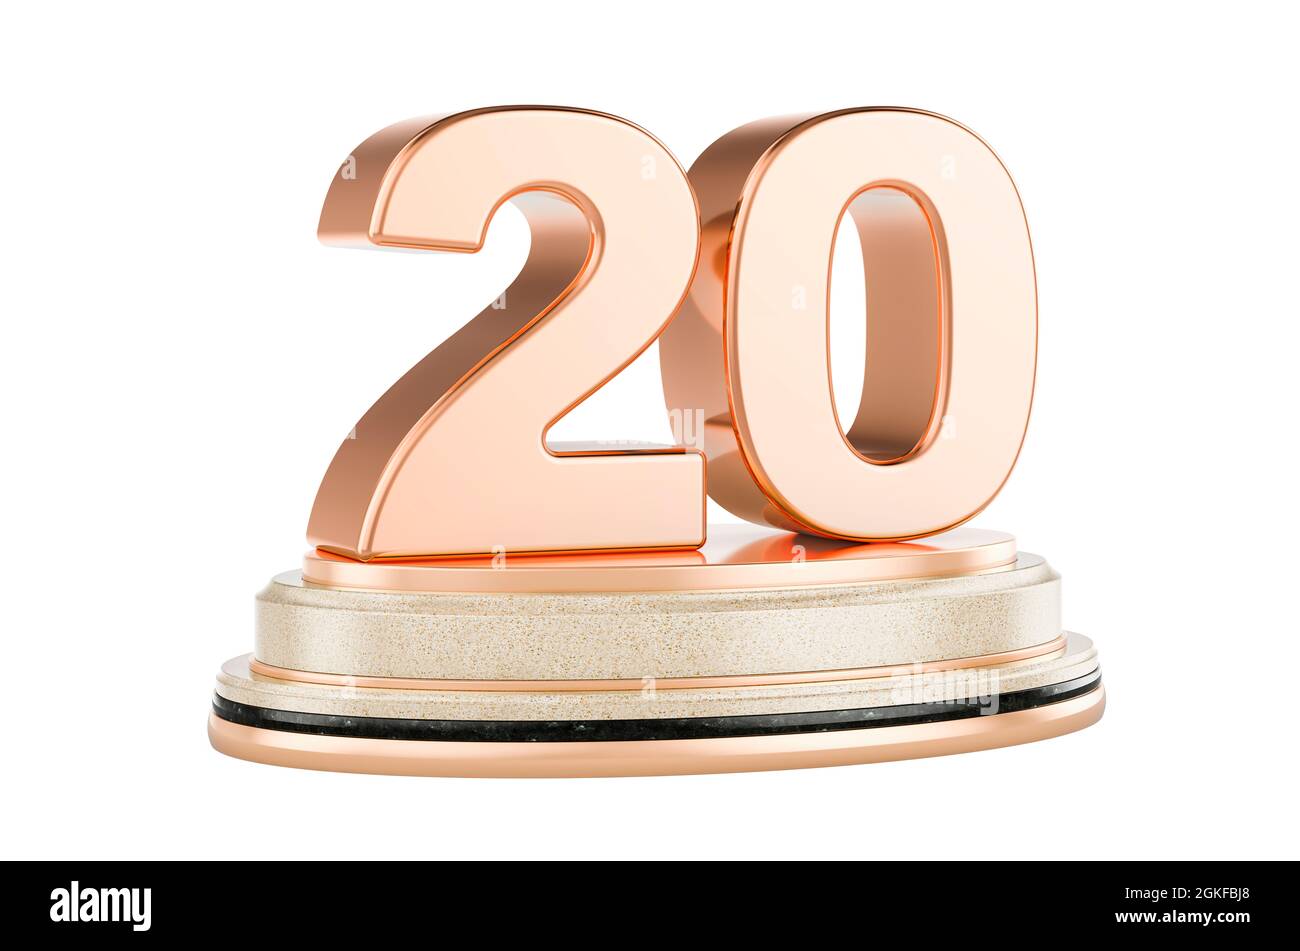 Golden 20 sul podio, premio Concept. Rendering 3D isolato su sfondo bianco Foto Stock